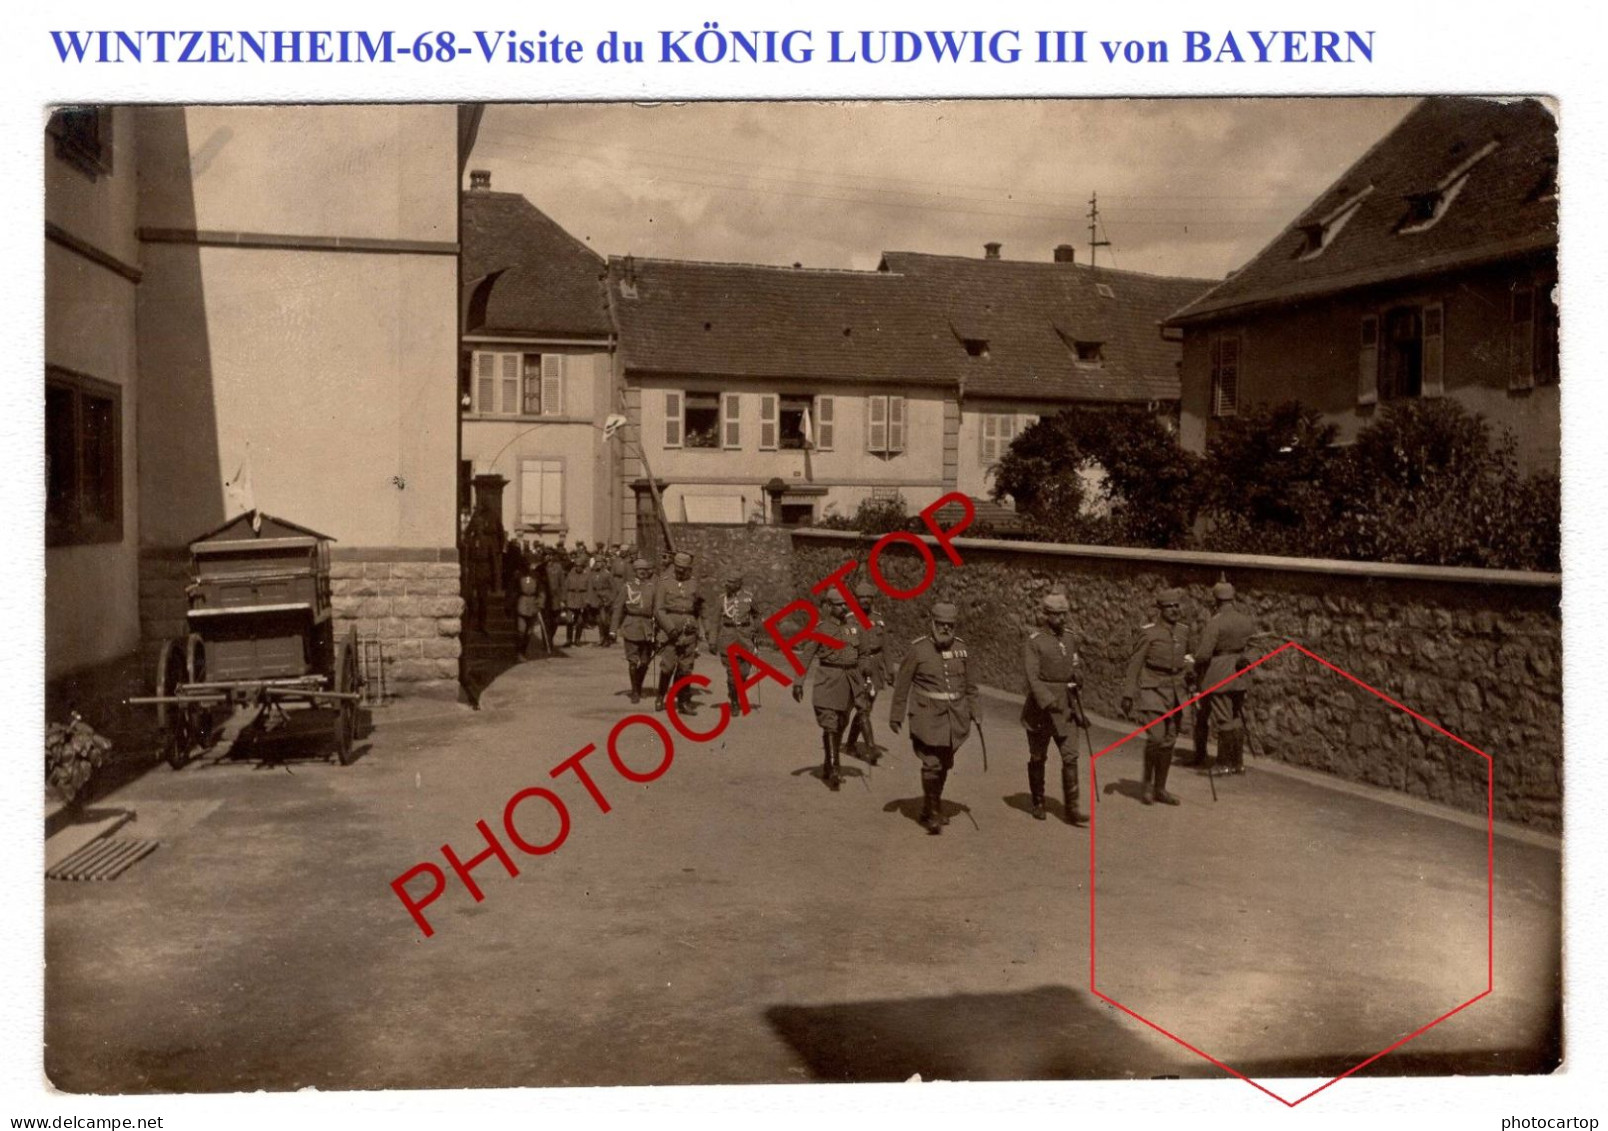 WINTZENHEIM-68-Visite Du KÖNIG LUDWIG III Von BAYERN-CARTE PHOTO Allemande-Guerre-14-18-1 WK-Militaria-Feldpost- - Wintzenheim